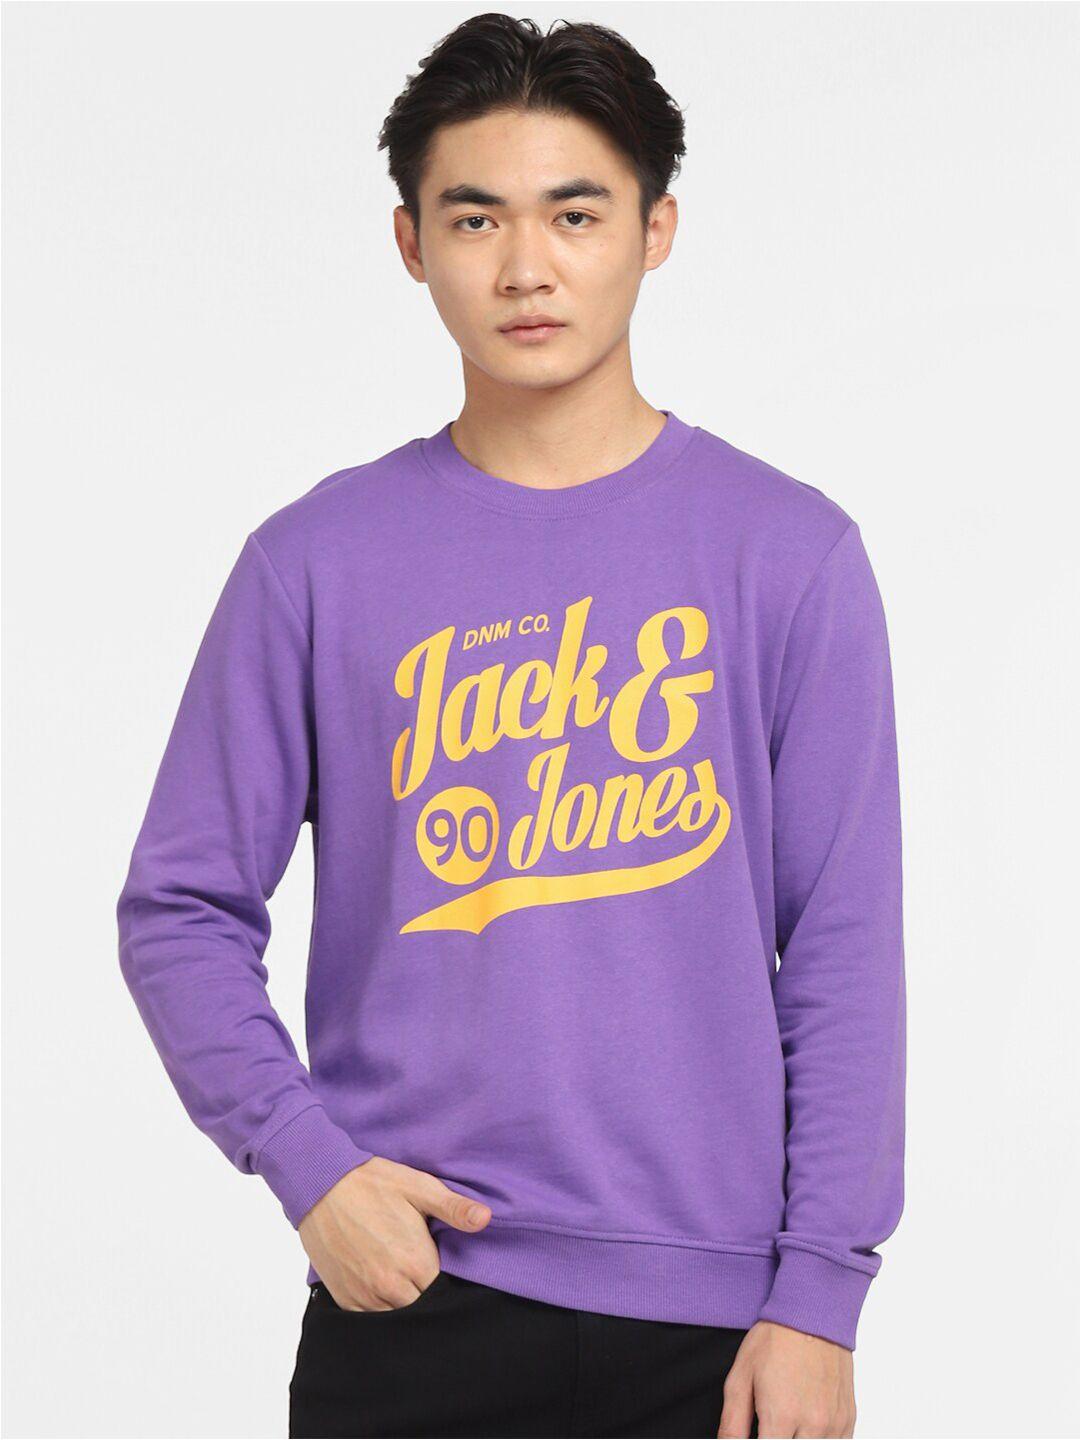 jack-&-jones-men-purple-&-yellow-printed-cotton-sweatshirt